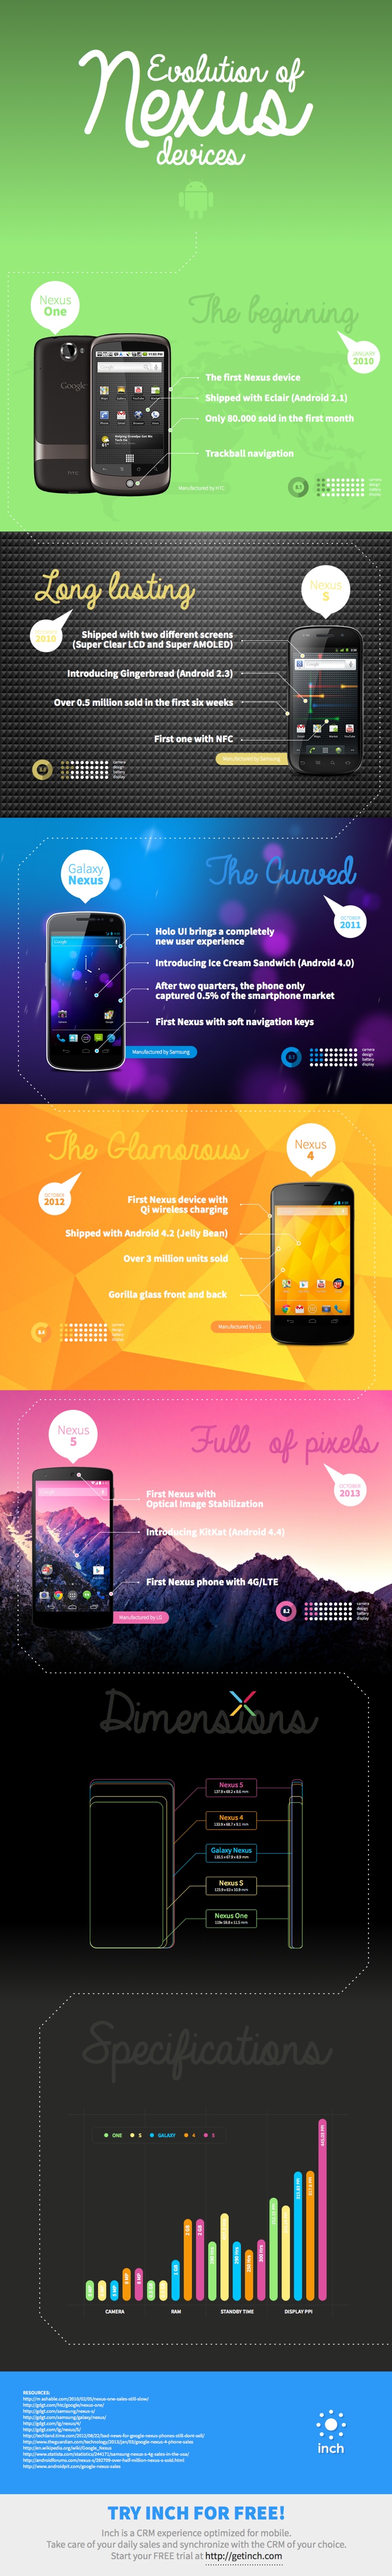 Evolution-Of-Nexus-Devices-Infographic